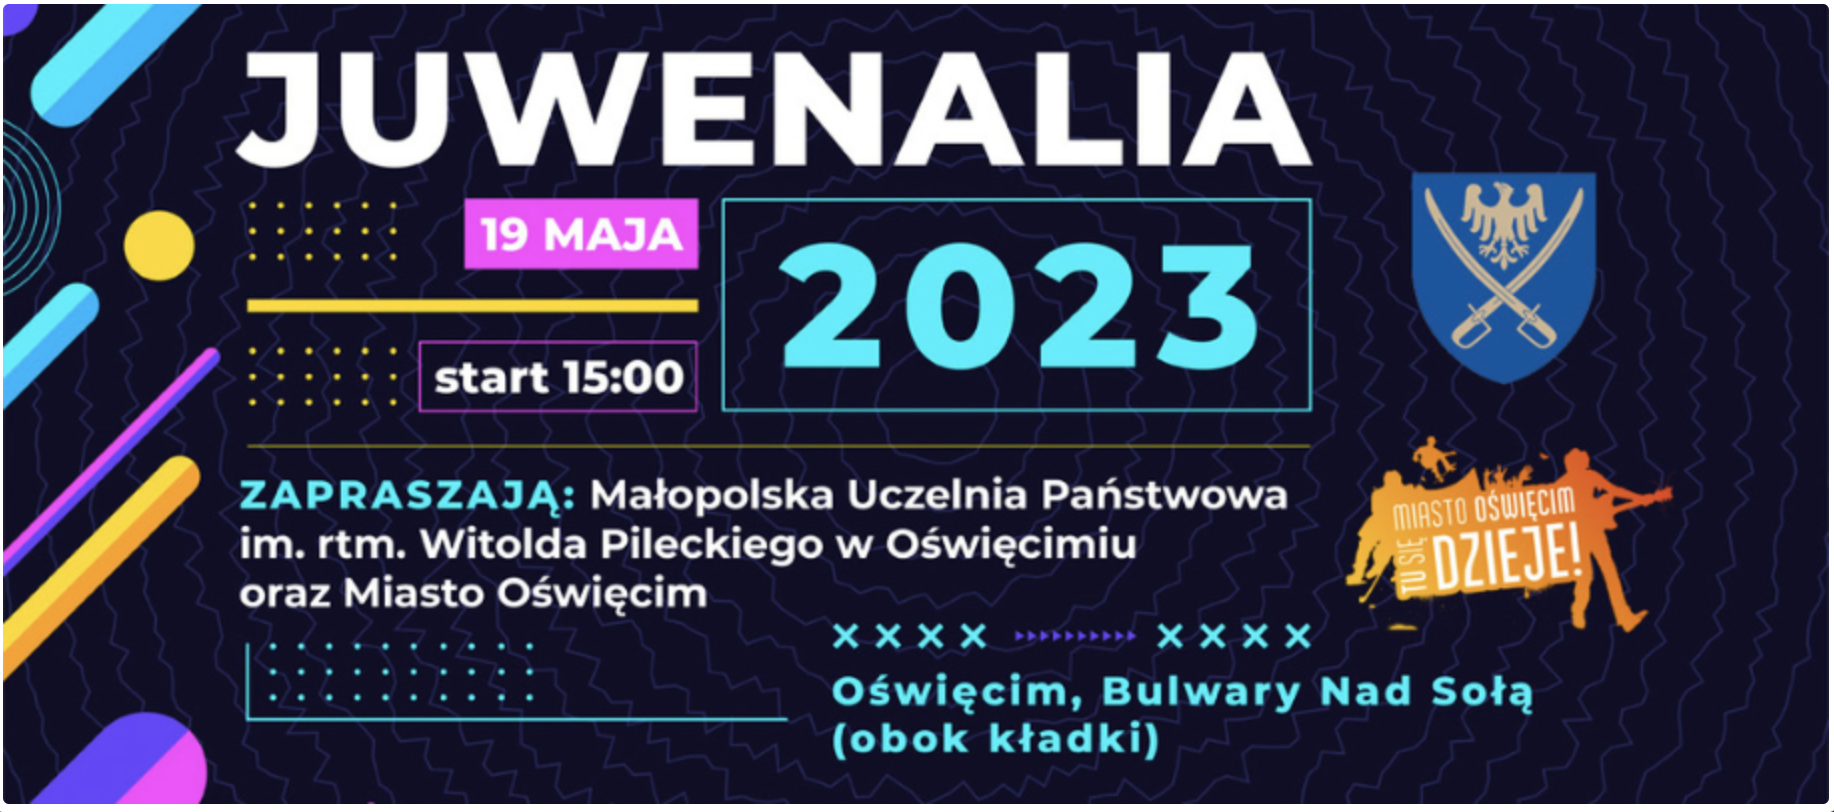 Uczelnia Oświęcim Juwenalia 2023 Info Oswiecim Info Malopolska Info Polska